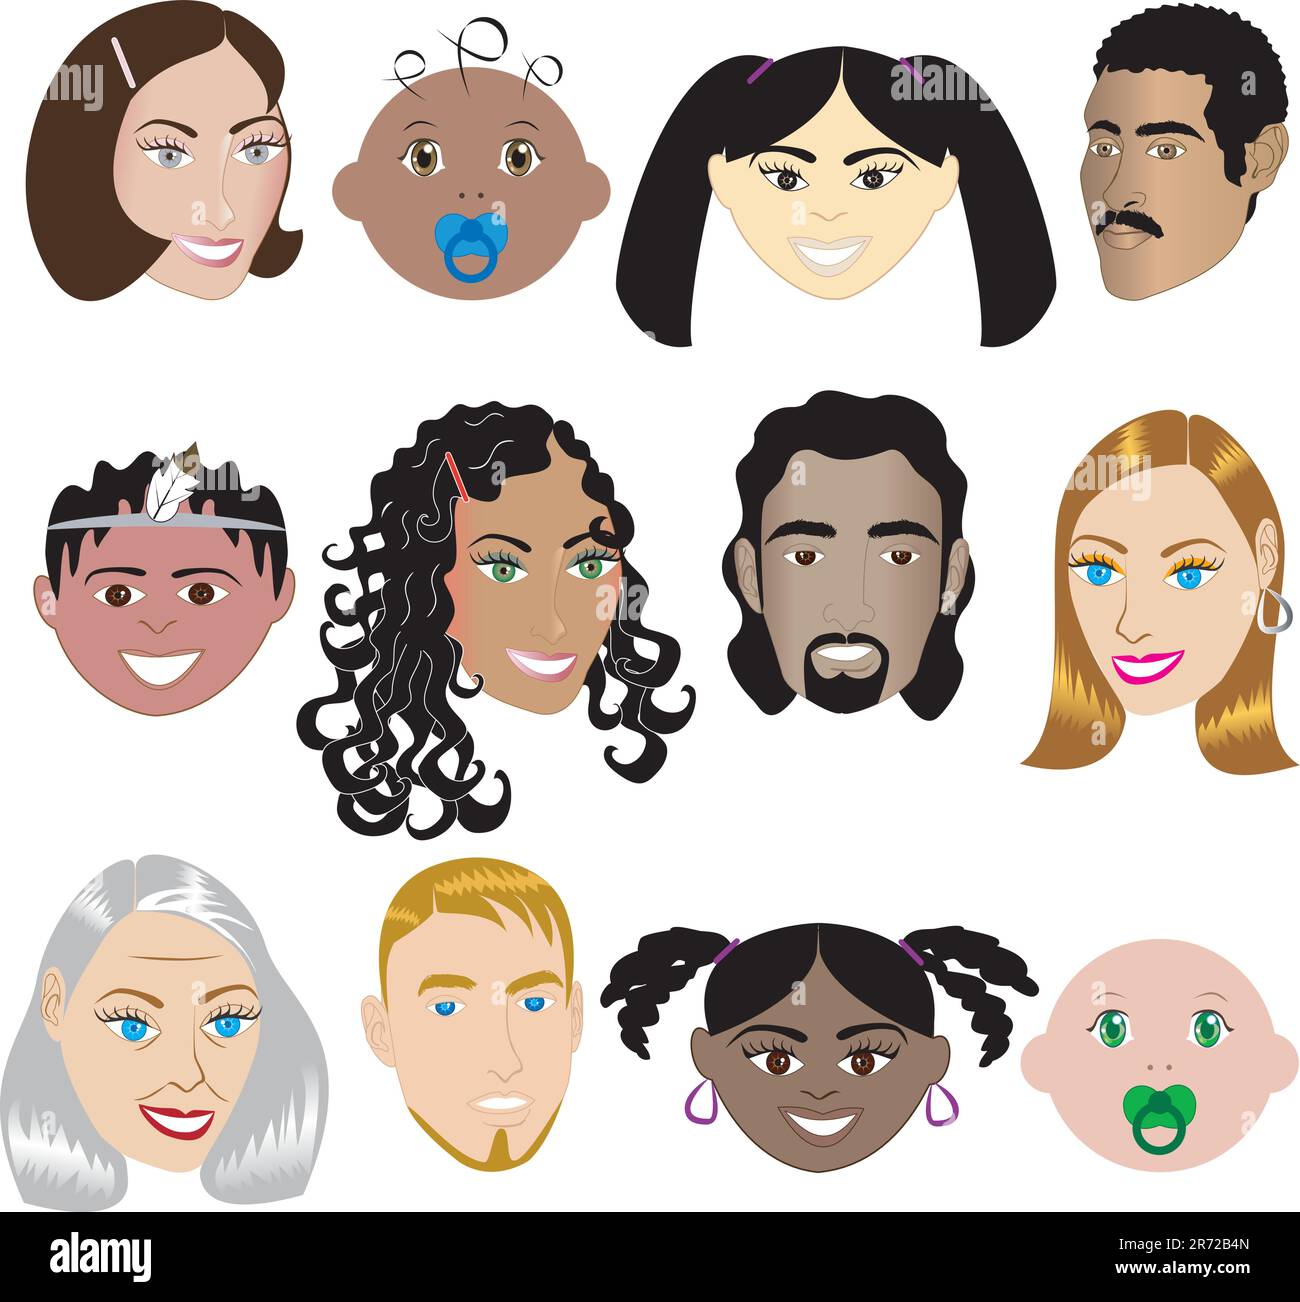 Les visages des gens 3. Vector Illustration set de 12 différents visages de tous les sexes, les races et les âges. Également disponible dans d'autres séries. Illustration de Vecteur